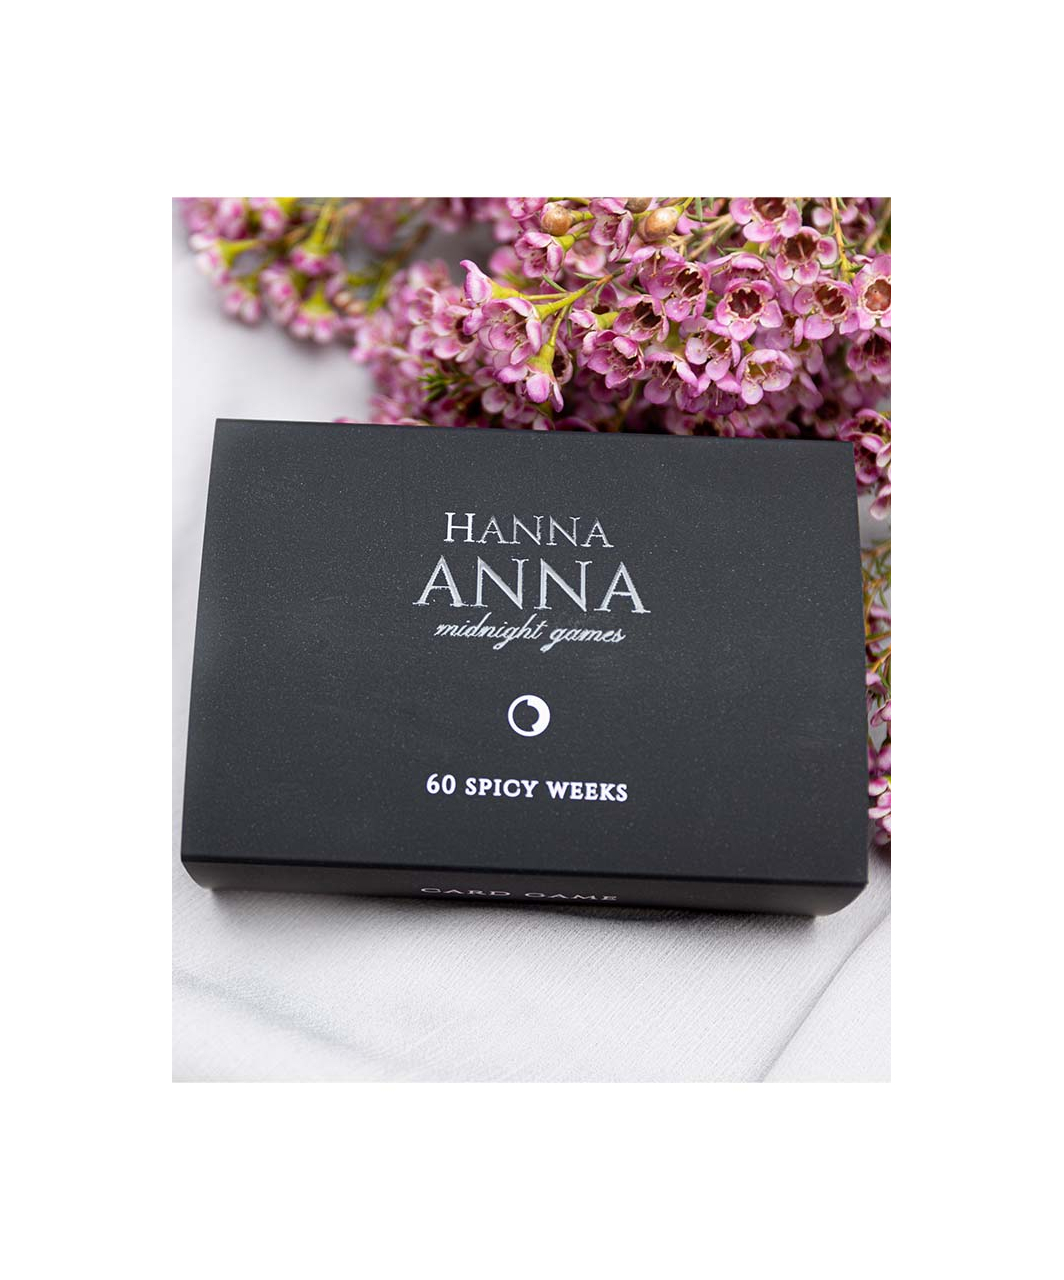 Hanna Anna 60 SPICY WEEKS